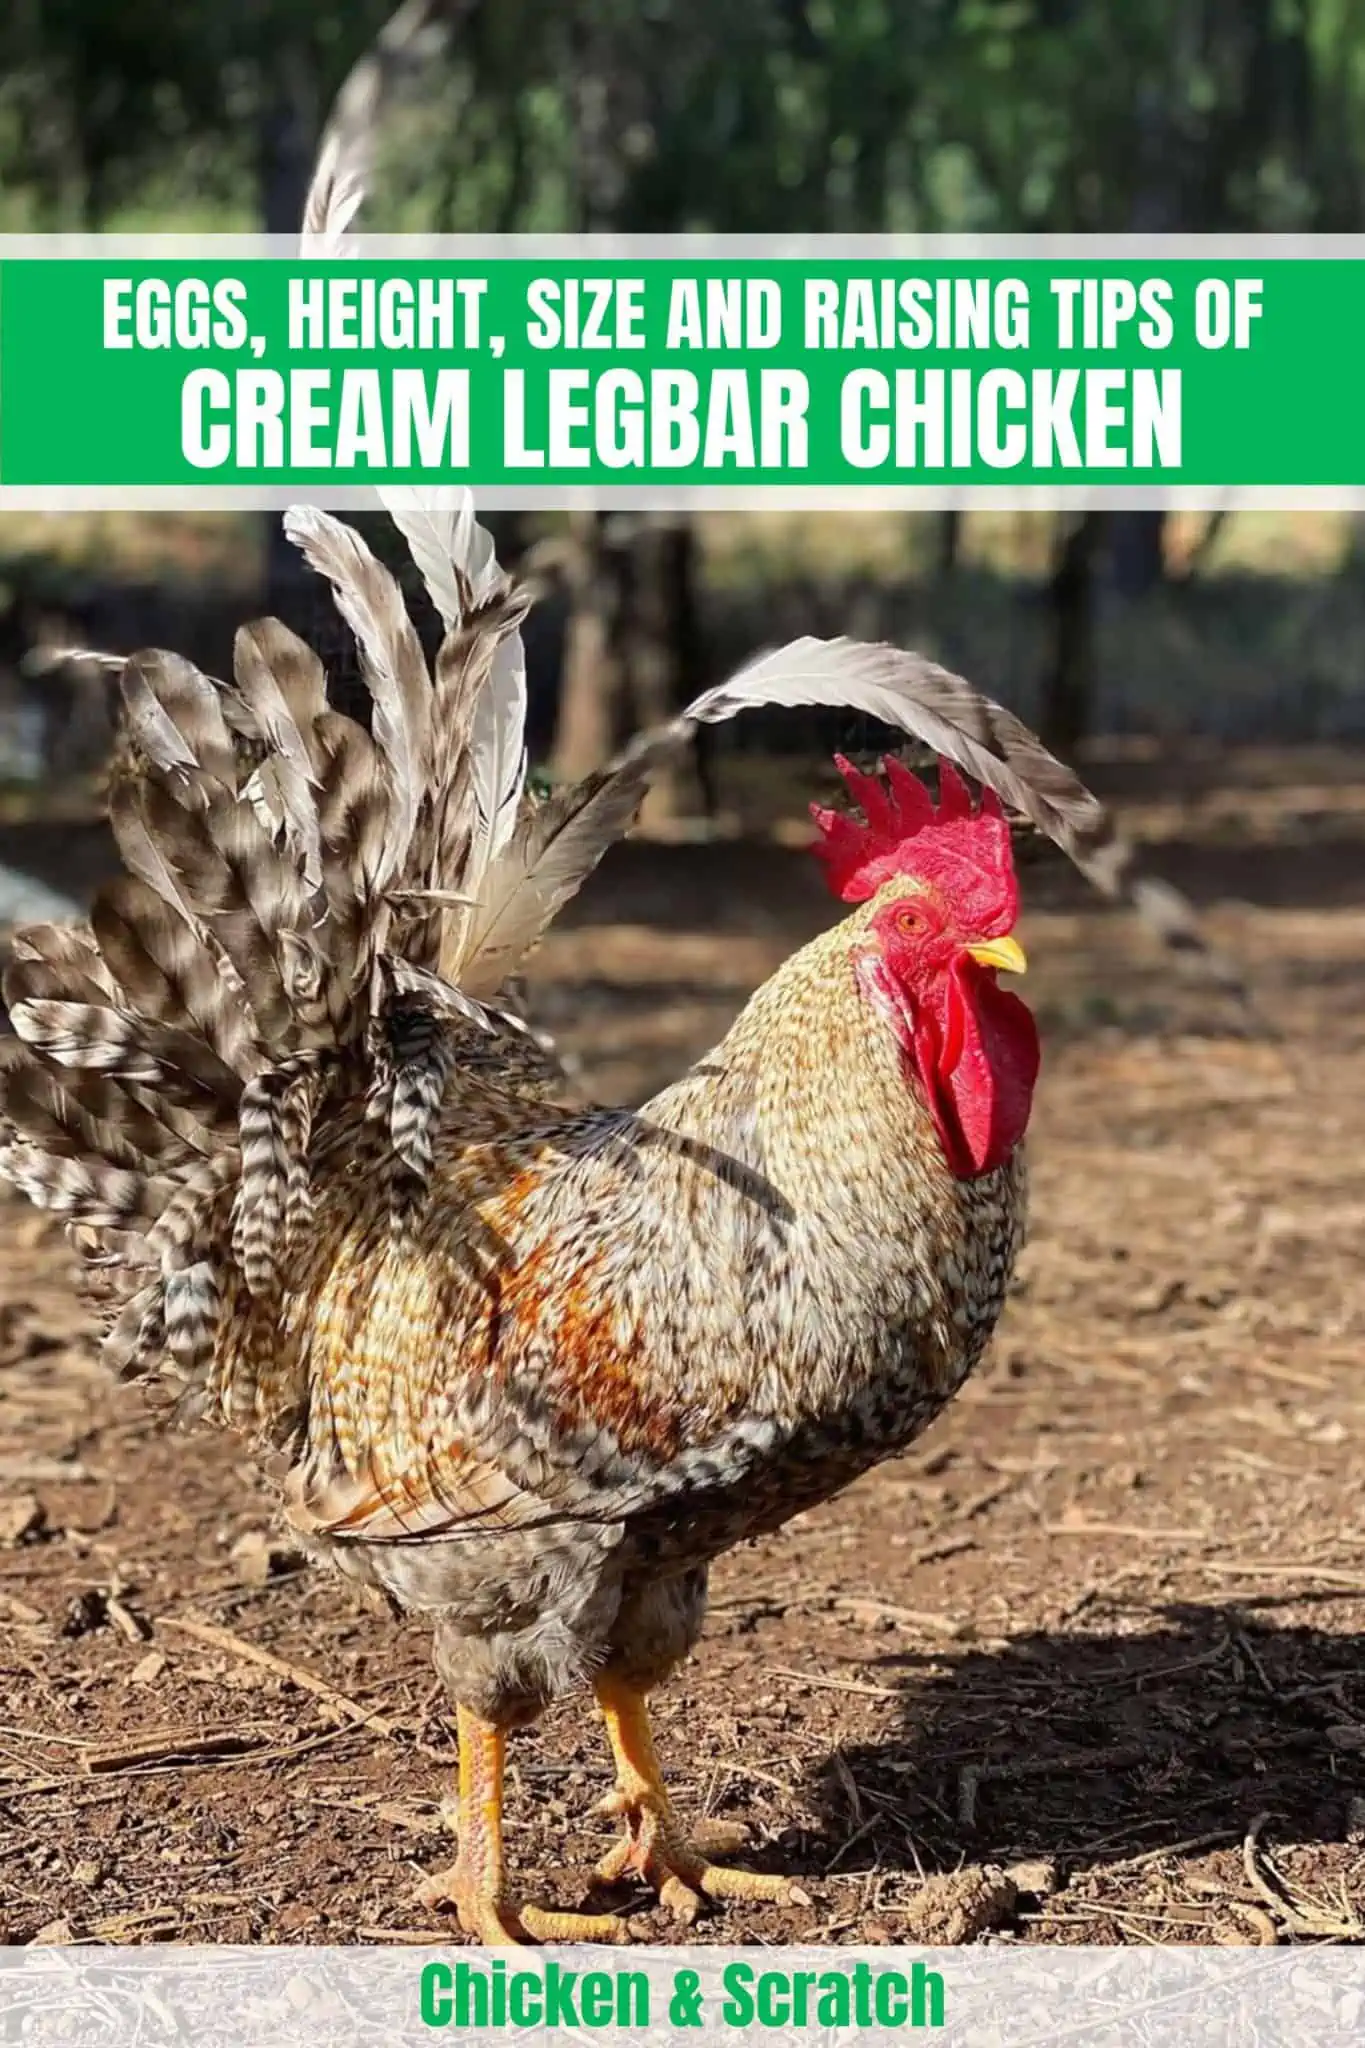 Cream Legbar: Ovos, altura, tamanho e conselhos para a criação